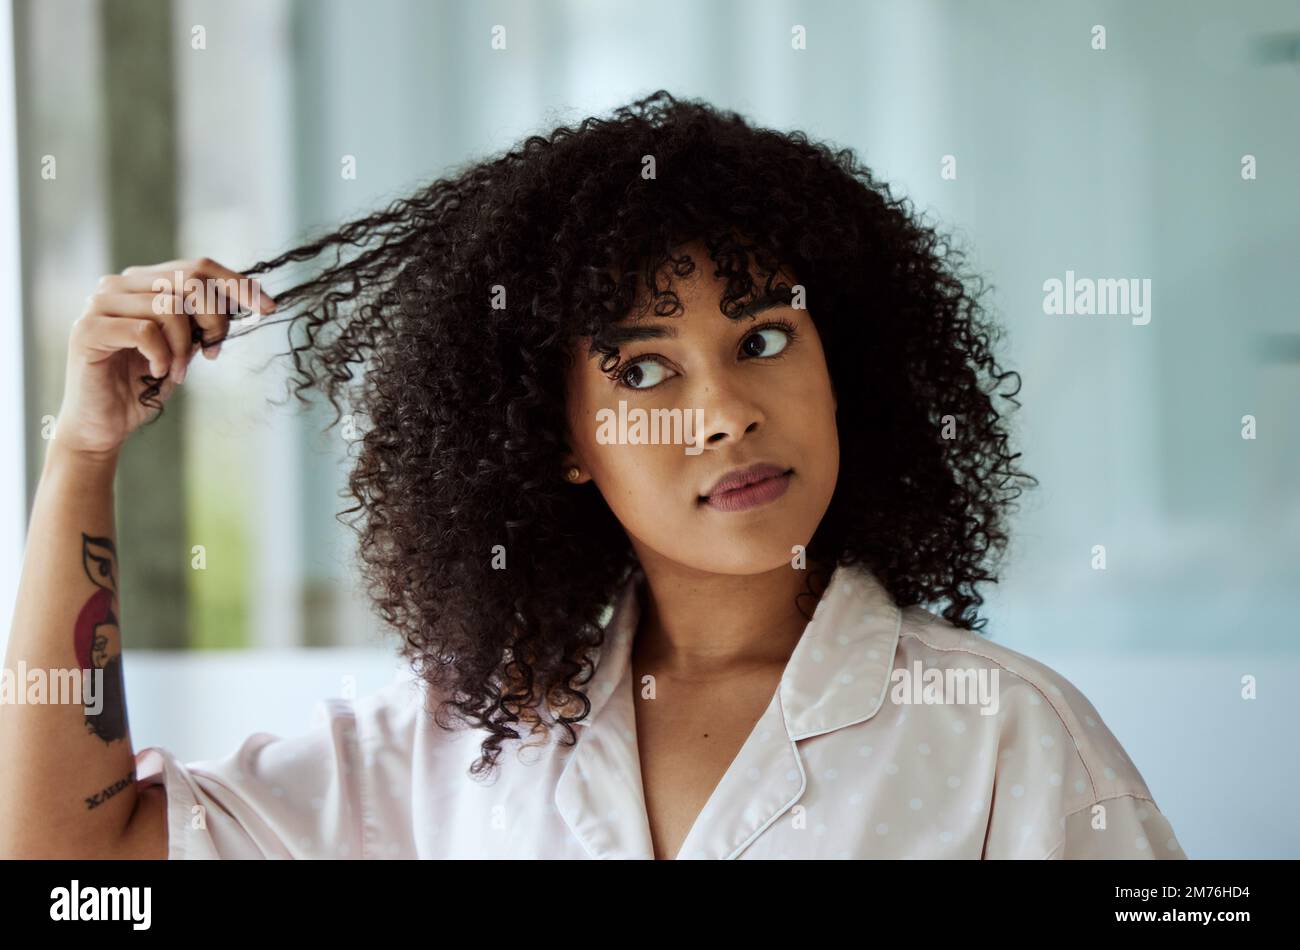 Matin, femme naturelle et noire avec soins des cheveux salle de bains routine sensation de cheveux bouclés texture. Beauté, soin de soi et fille africaine penser à la cosmétique Banque D'Images